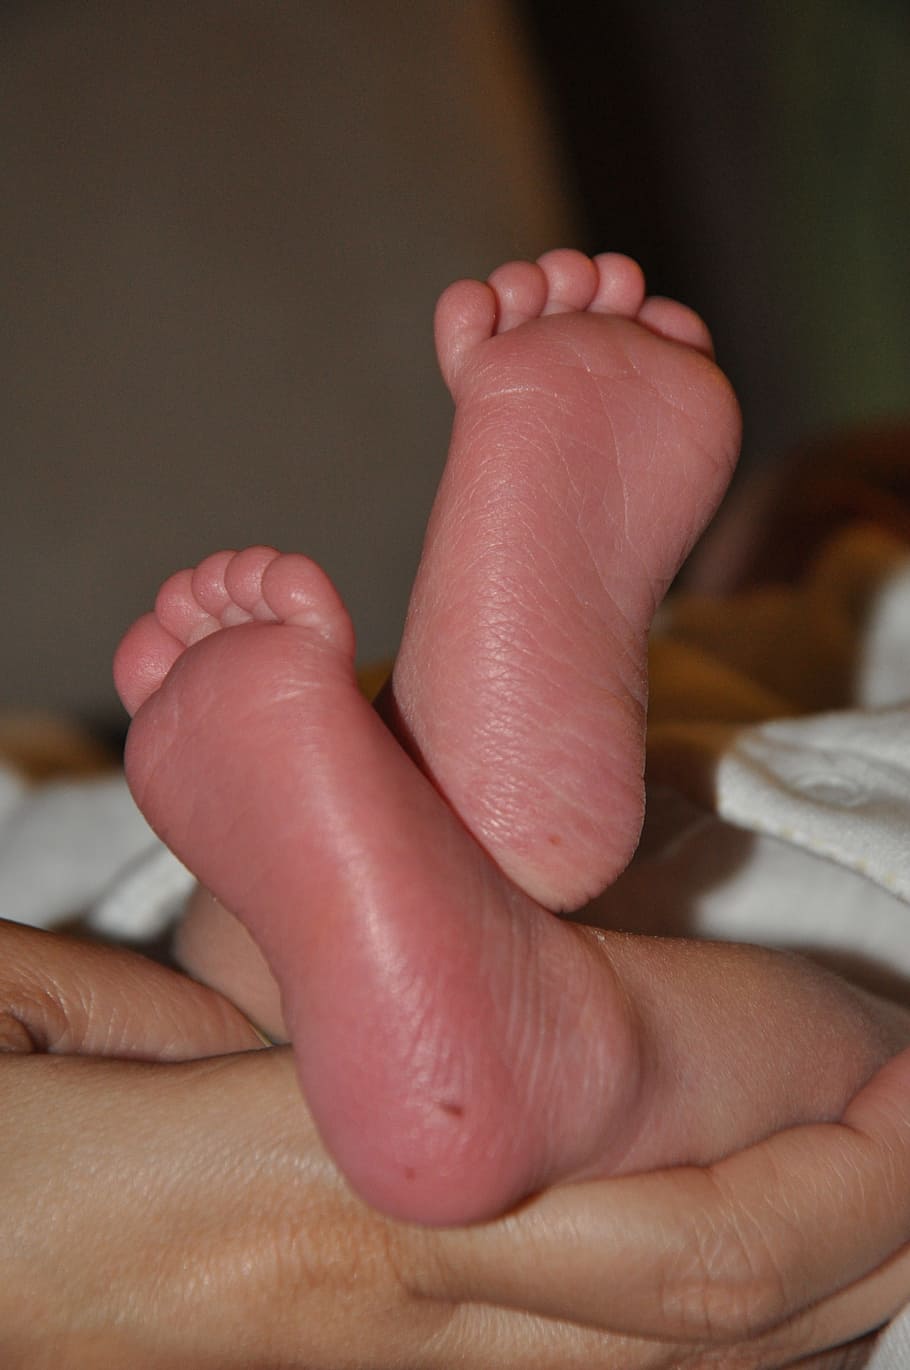 Pies pequeños, lindo, bebé, niño, pequeño, infantil, pie, parte del cuerpo humano, pie humano, descalzo